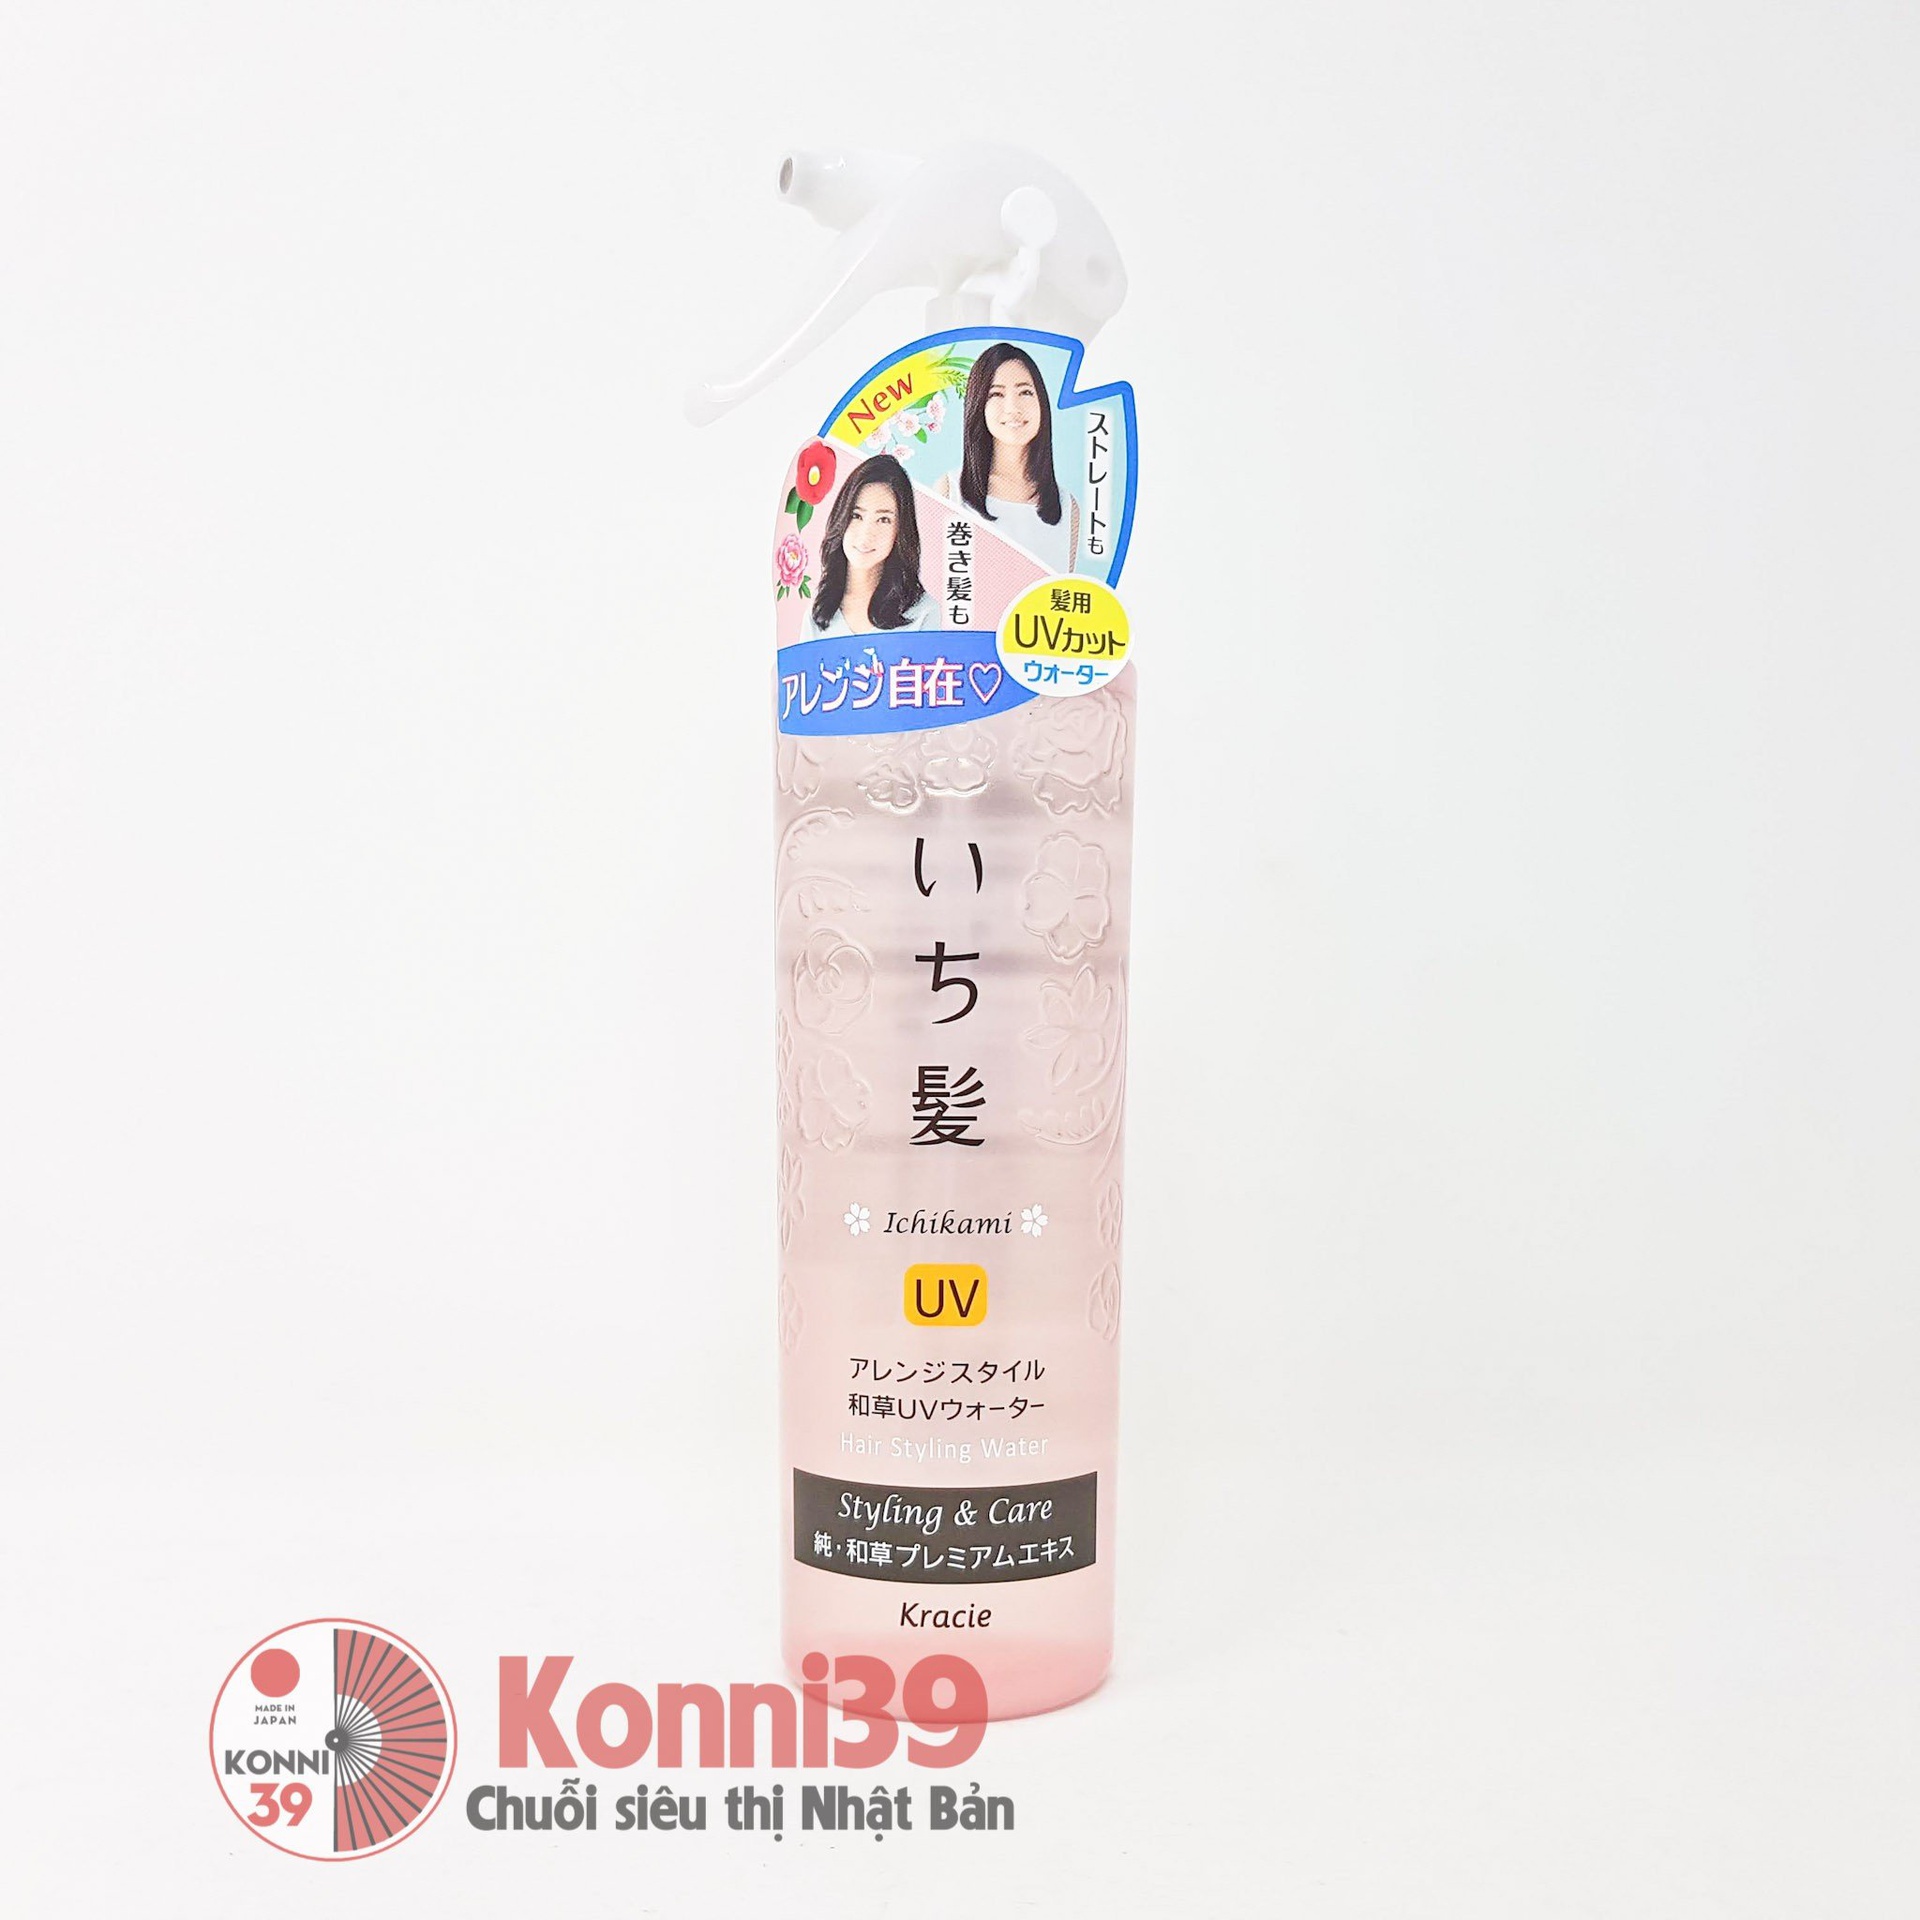 Xịt dưỡng tóc Kracie Ichikami Styling and Care chống UV 200ml 